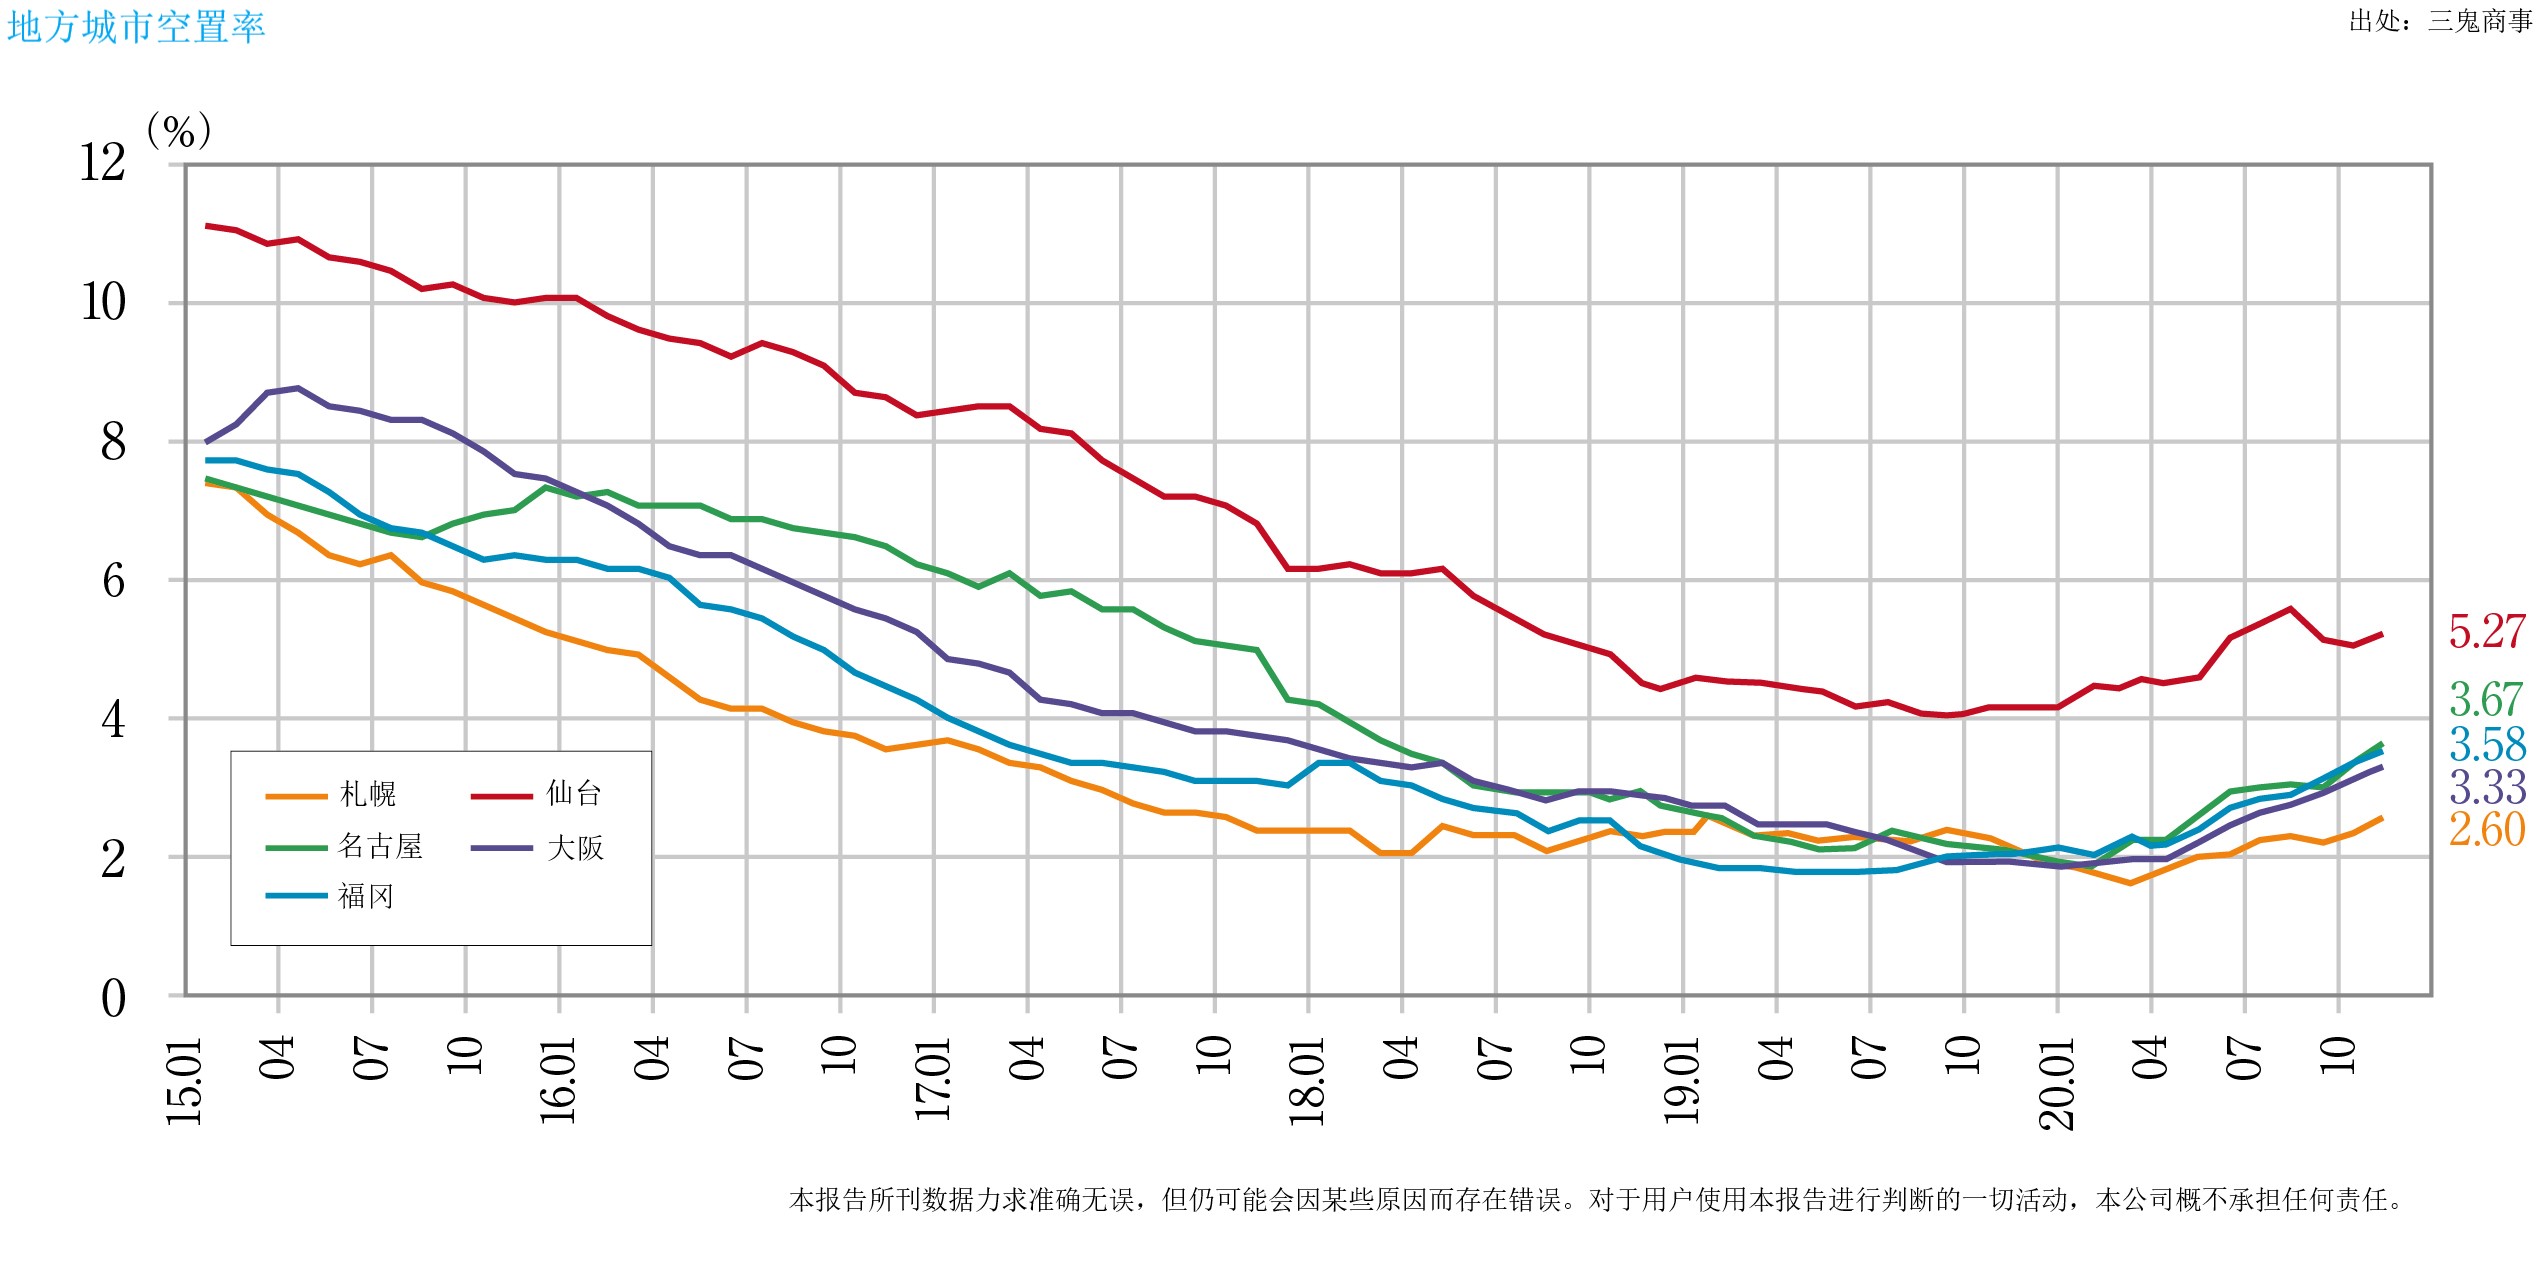 从地方市场来看，2020年10月至12月的空置率，札幌从2.38%上升至2.66%，仙台从5.10%上升至5.51%，横滨从3.76%上升至3.85%，名古屋从3.39%上升至3.80%，大阪从3.14%上升至3.44%，福冈从3.40%上升至3.87%，虽然各个地区的空置率都有略微上升，但与东京都中心地区相比，受到新冠疫情的影响相对较小。在平均每坪的租金方面，札幌从9,430日元上升至9,468日元，仙台从9,337日元下降至9,316日元，横滨从12,249日元上升至12271日元，名古屋从11,836日元下降至11,819日元，大阪从11,928日元下降至11,925日元，福冈从11,028日元上升至11,086日元，札幌、横滨和福冈上升，仙台、名古屋和大阪下降，但波动范围很小。 由于新冠病毒感染的扩大，各地区的远程办公、及总部职能的地方转移和分散等工作方式改革使东京都中心地区的市场外流，与此相对的地方市场接收此部分的流出市场，因此形成了鲜明对比。 在东京都中心地区，由于远程工作的增多，特别是在日益推进ICT的大公司中，不再使用的办公室楼层面积正在增加。最近出现了一些大企业通过出售自己的公司大楼并回租的方式来精简办公空间。 许多企业趁着财年结束的3月份申请解约，同时也由于2020年夏季后申请了解约的企业将会搬迁，因此未来东京都中心地区的空置率将不可避免地上升。尽管在这种情况下，在东京都中心地区仍有许多计划新建的大型办公楼。根据CBRE最近发布的文件中，预计2023年将新投入建造的建筑面积在2,000坪以上的大型建筑有15栋、约68万坪。 至今为止，此级别（大型）每年供应40万坪就被认为是“很多了”，在预计工人数量今后将继续减少的情况下，东京都中心地区的办公楼市场将进入一个重大转折点，将需要继续采取措施来增加需求。